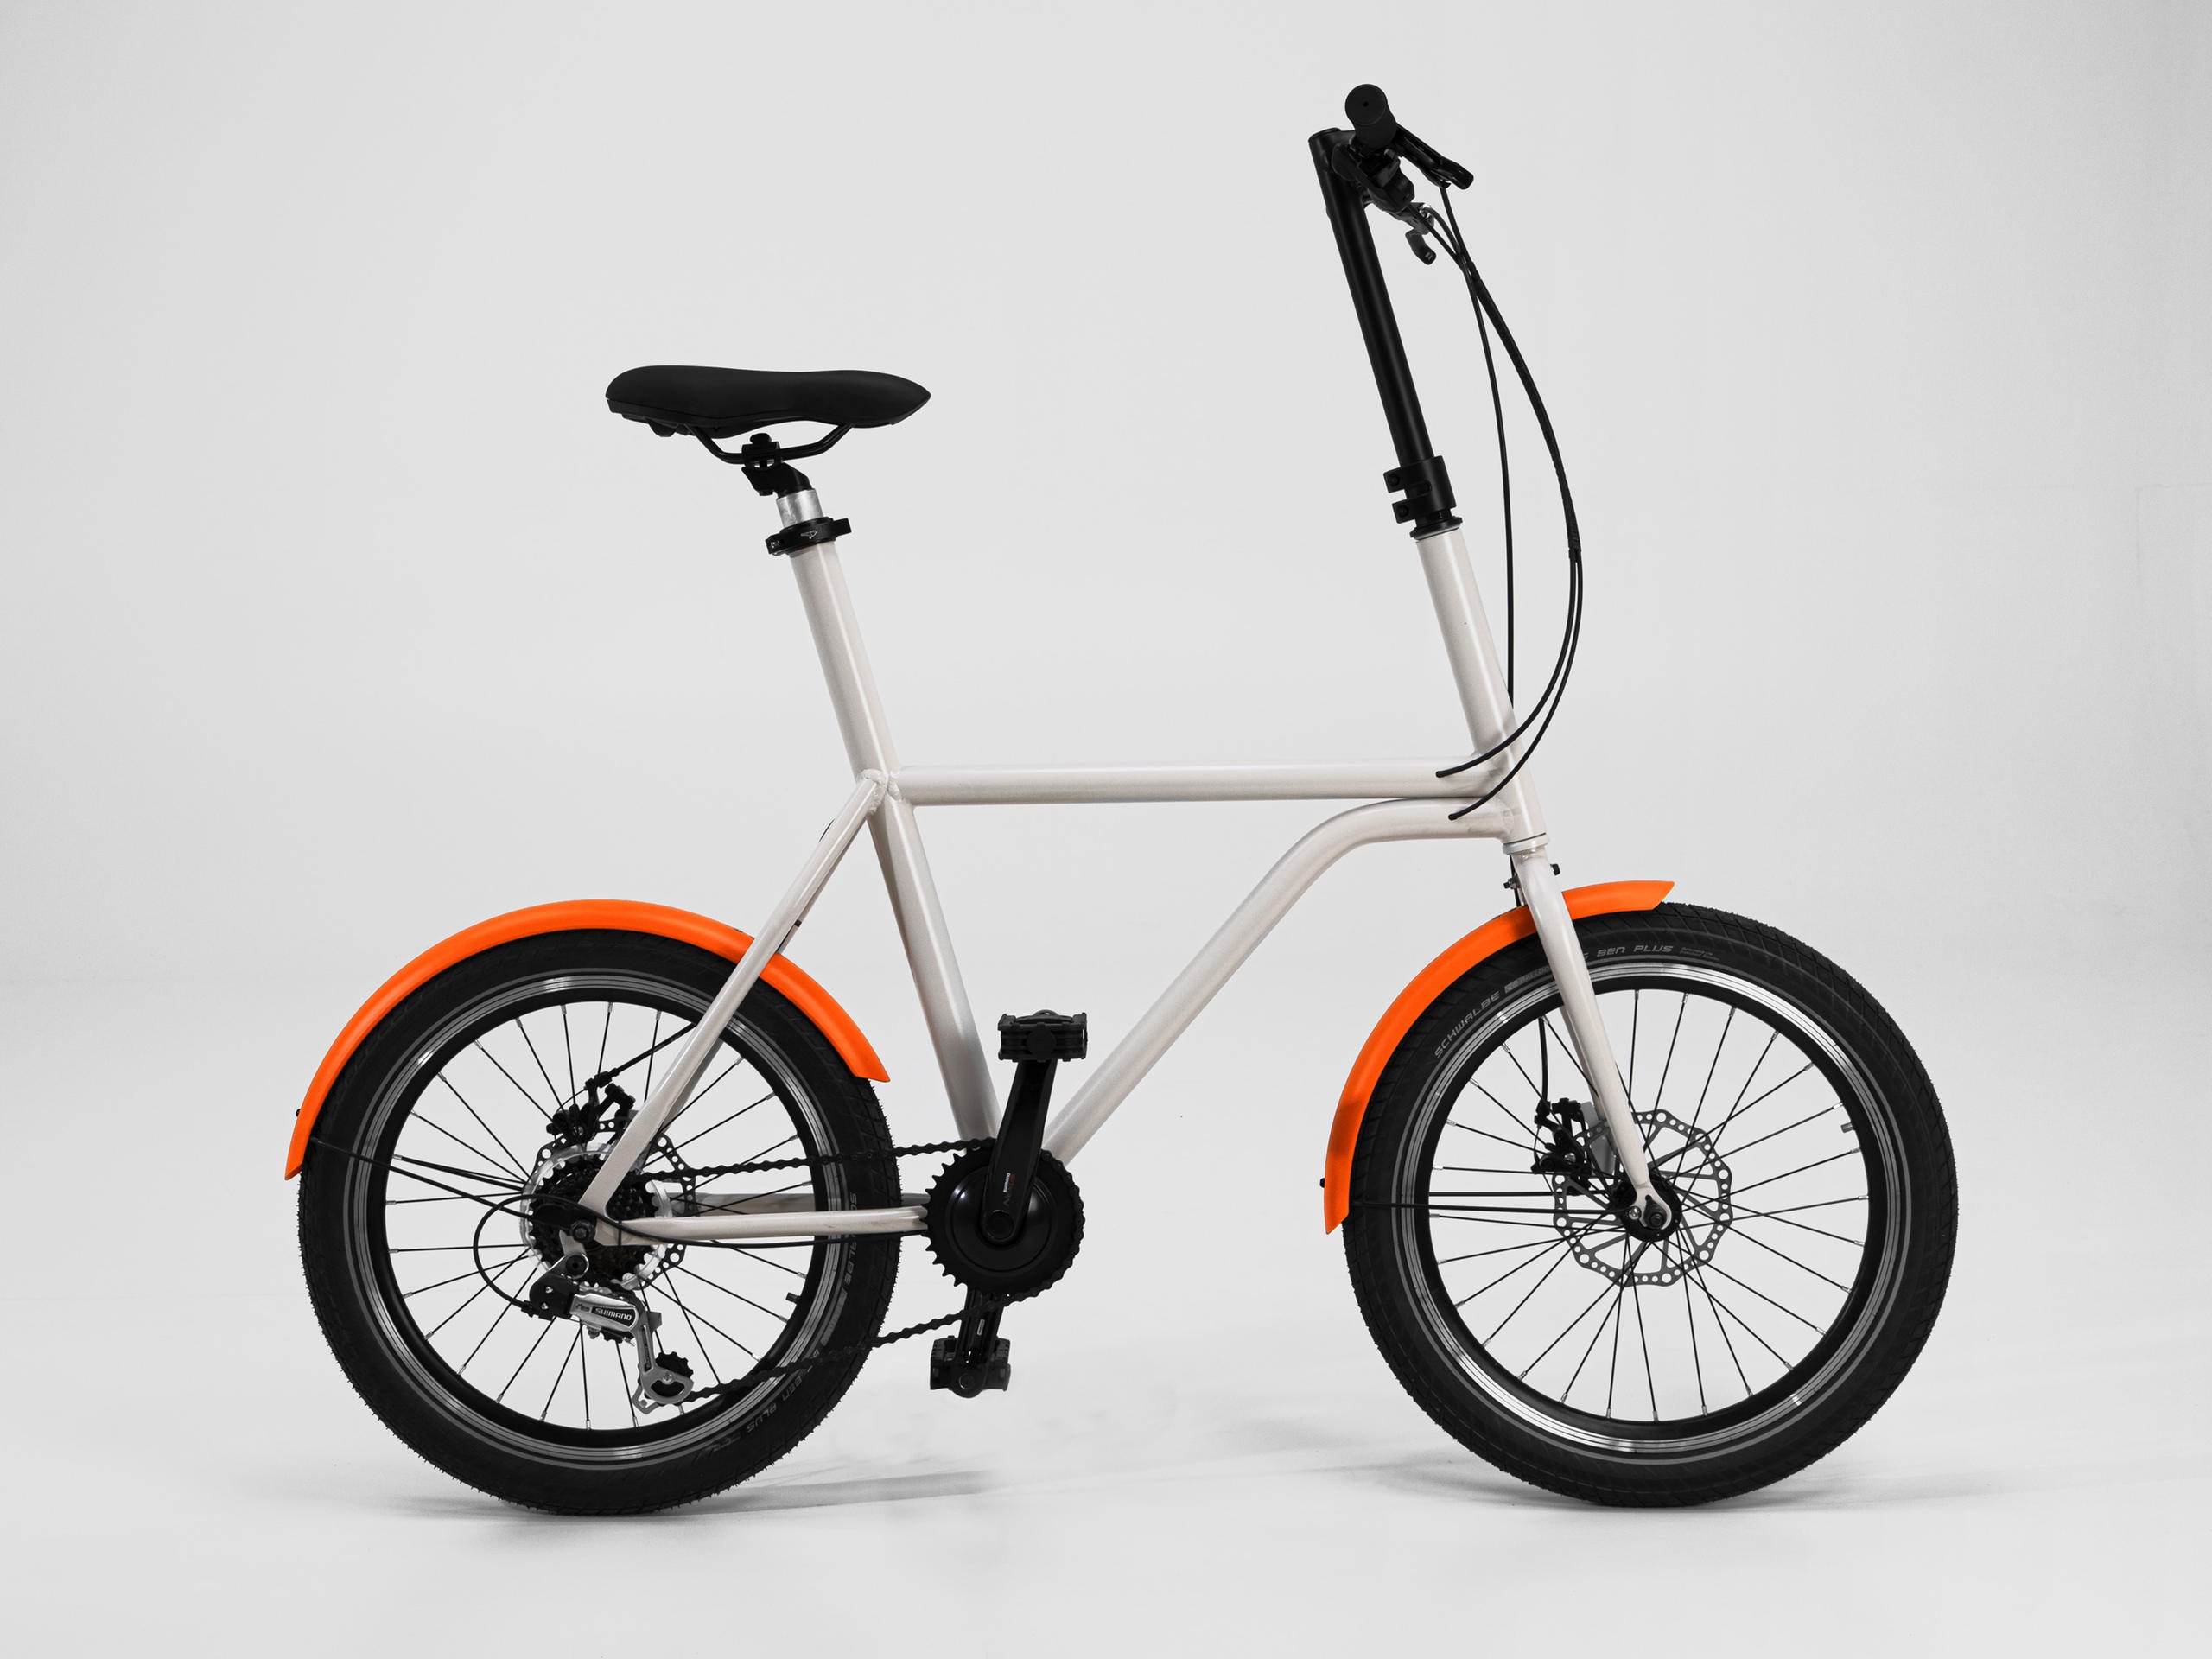 Il prototipo di bicicletta